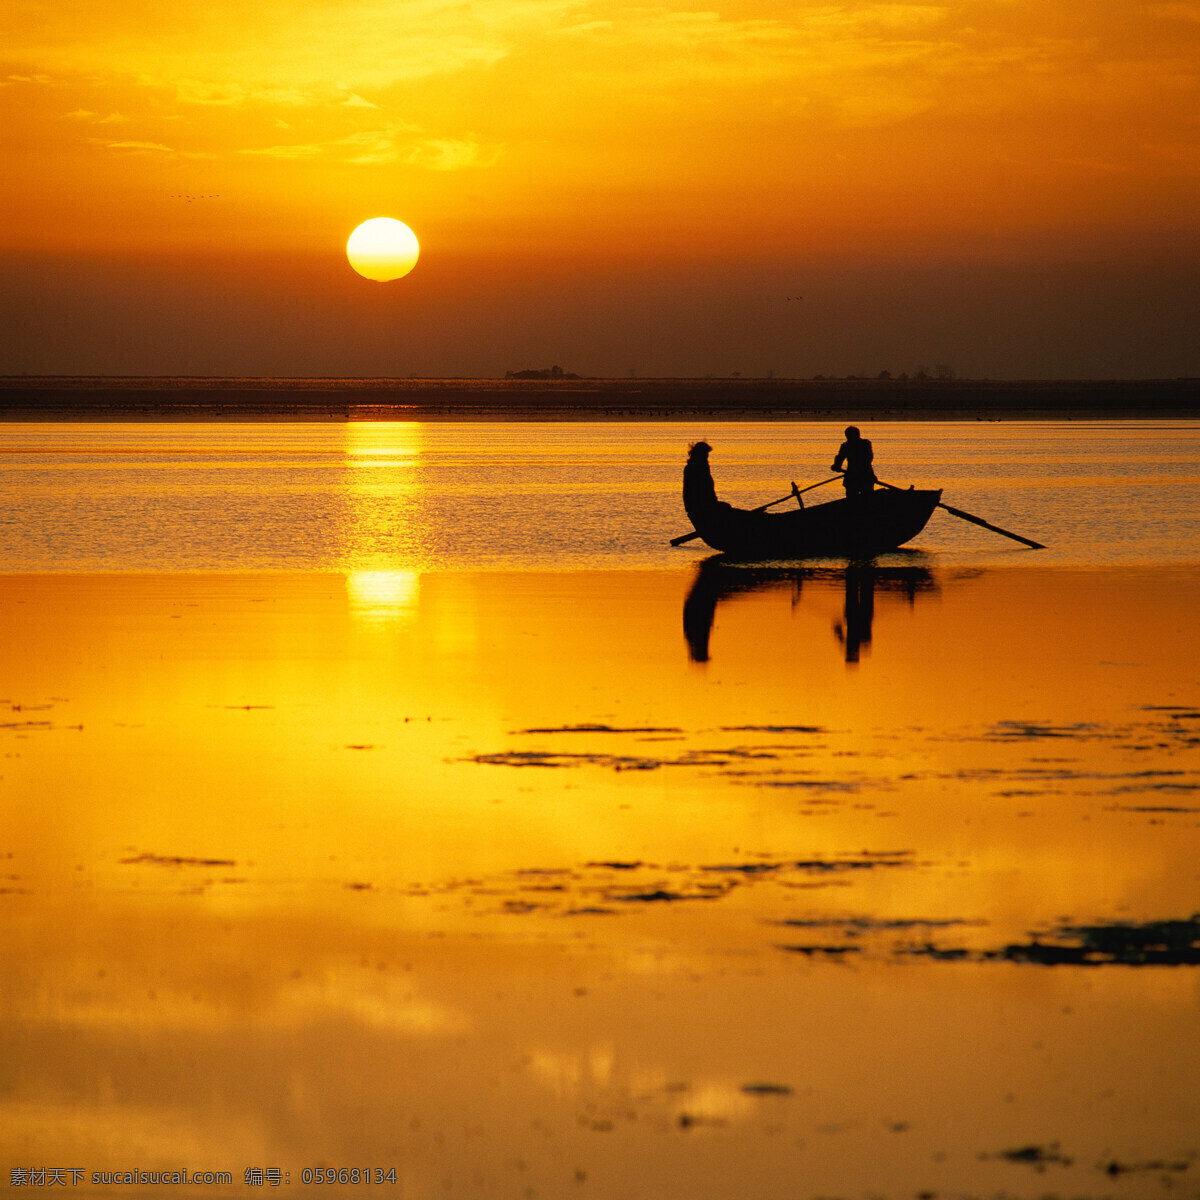 中国风景 黄昏 渔船 日出 自然景观 自然风景 摄影图库